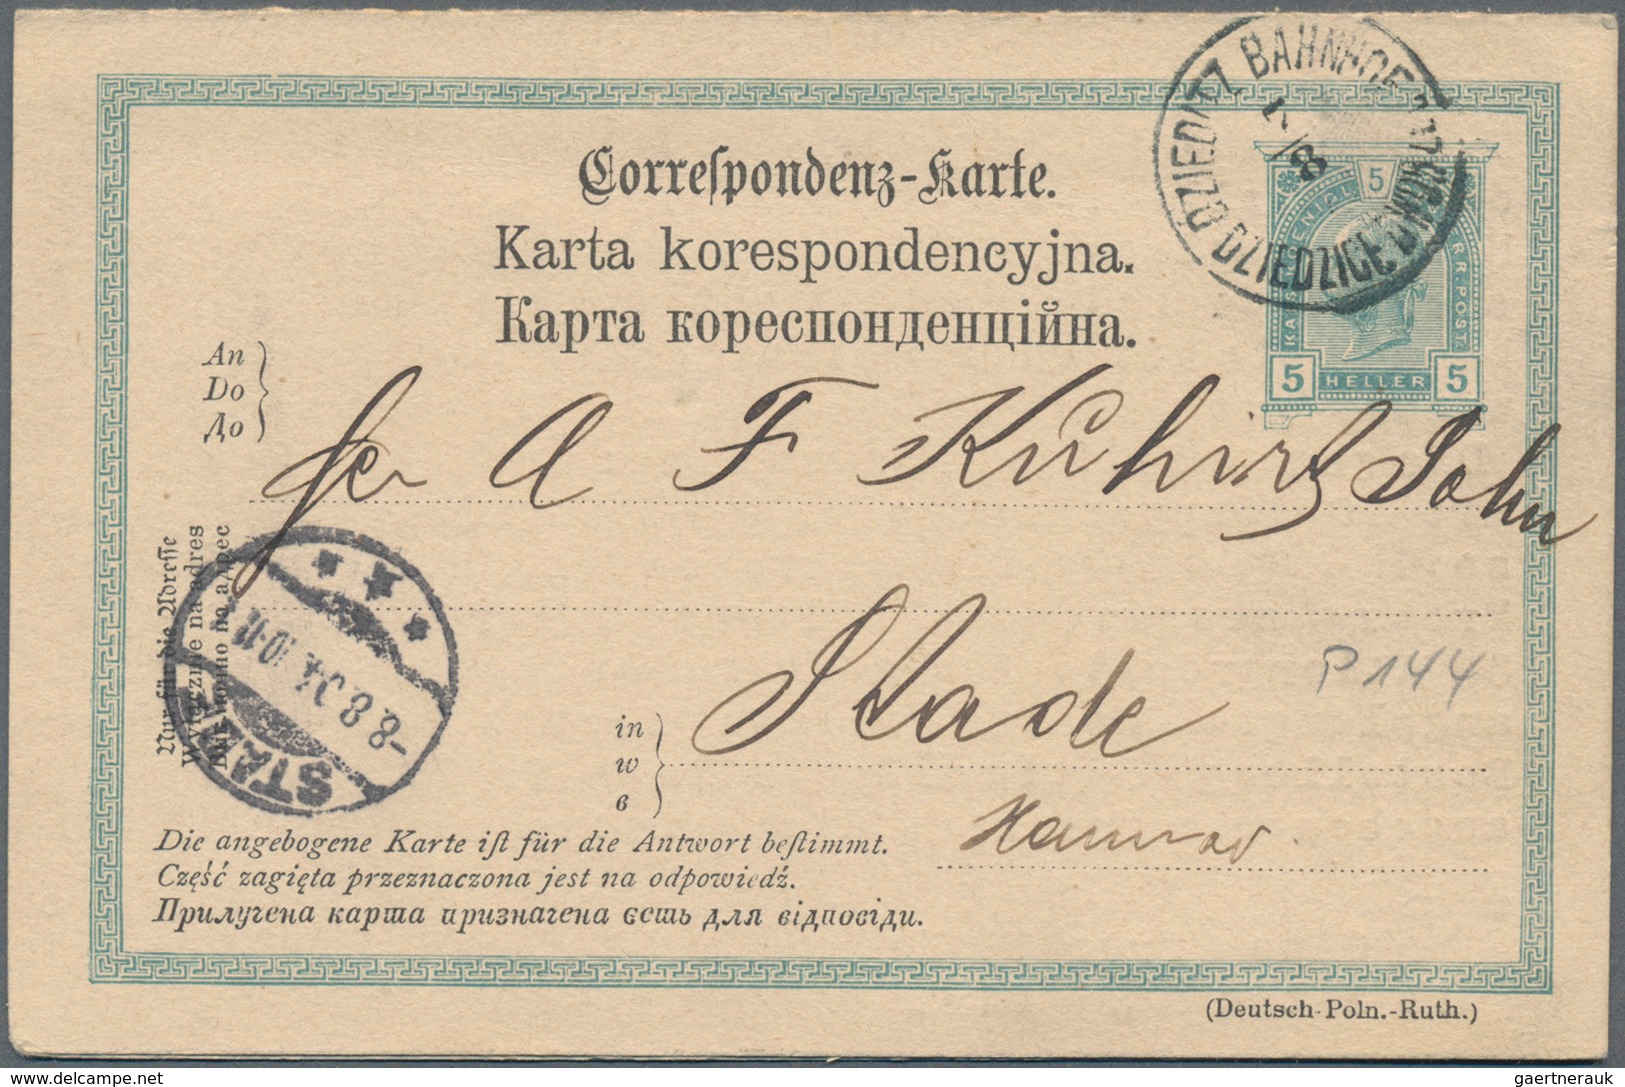 Österreich: Österreich 1860-1950: Kaiserreich, 1. Republik, Ostmark, österreichische Nebengebiete (B - Sammlungen